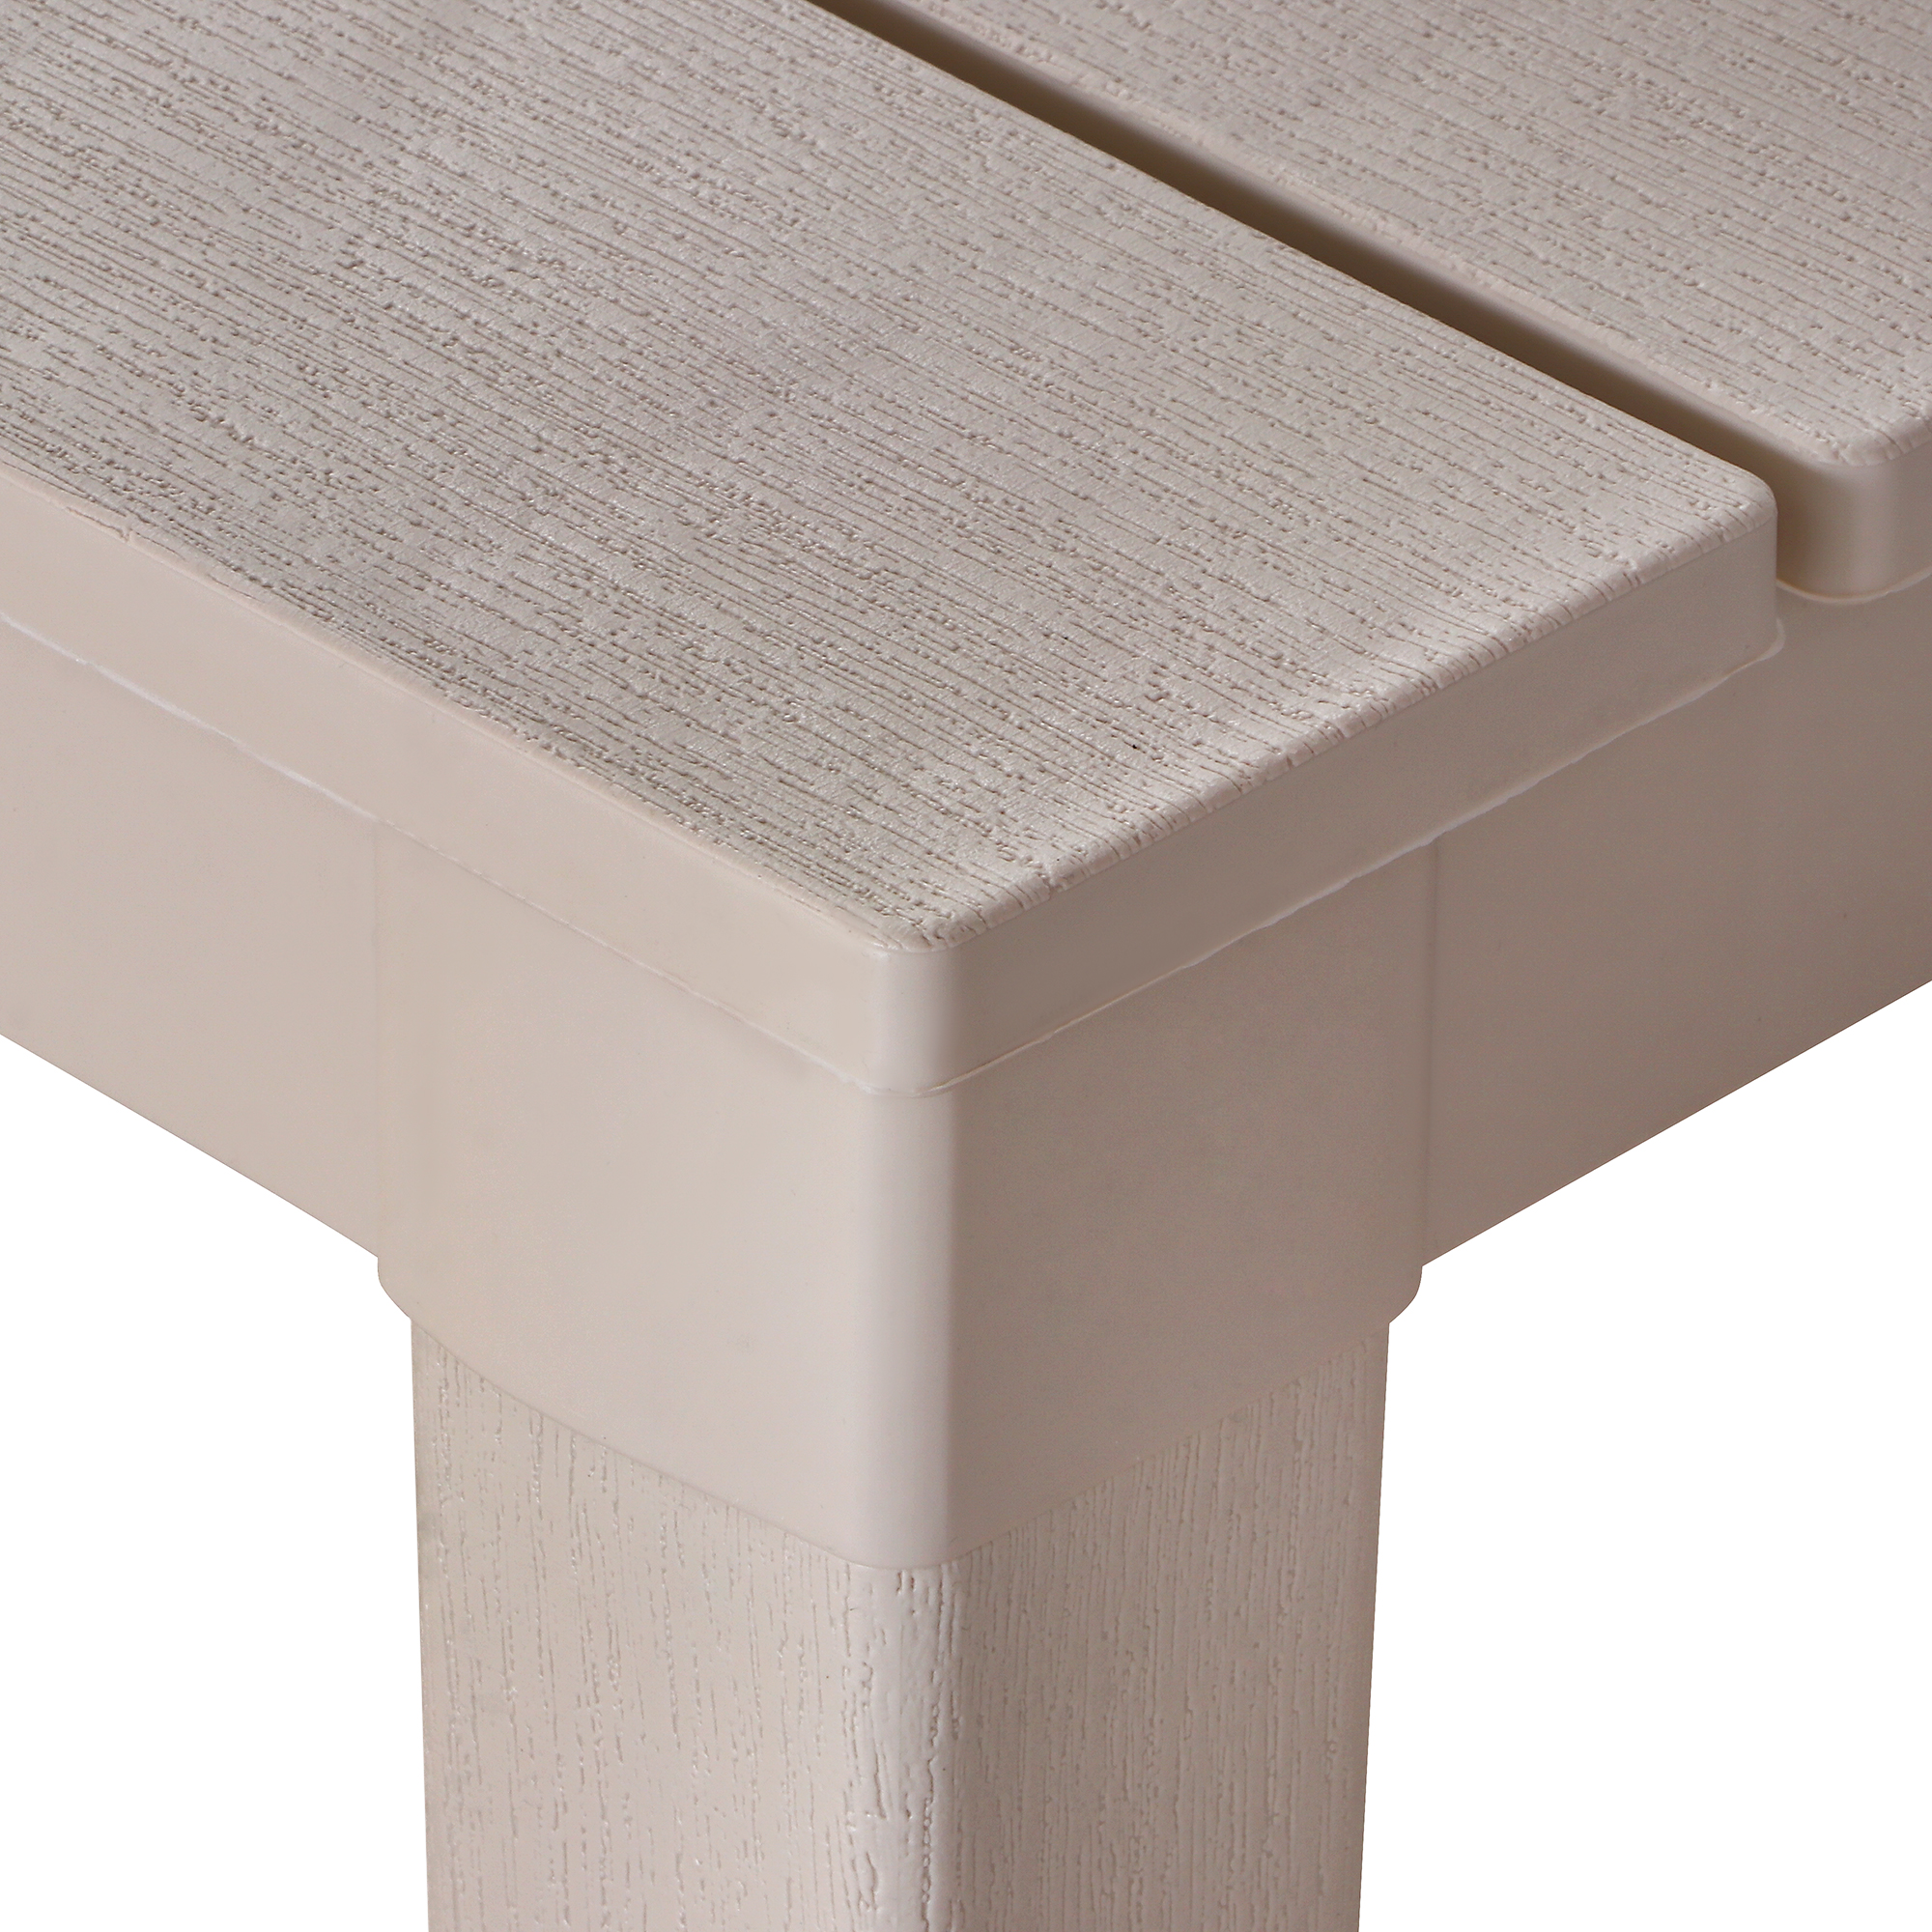 Стол Элластик-пласт Прованс прямоугольный grey 80x140 см, цвет серый - фото 3